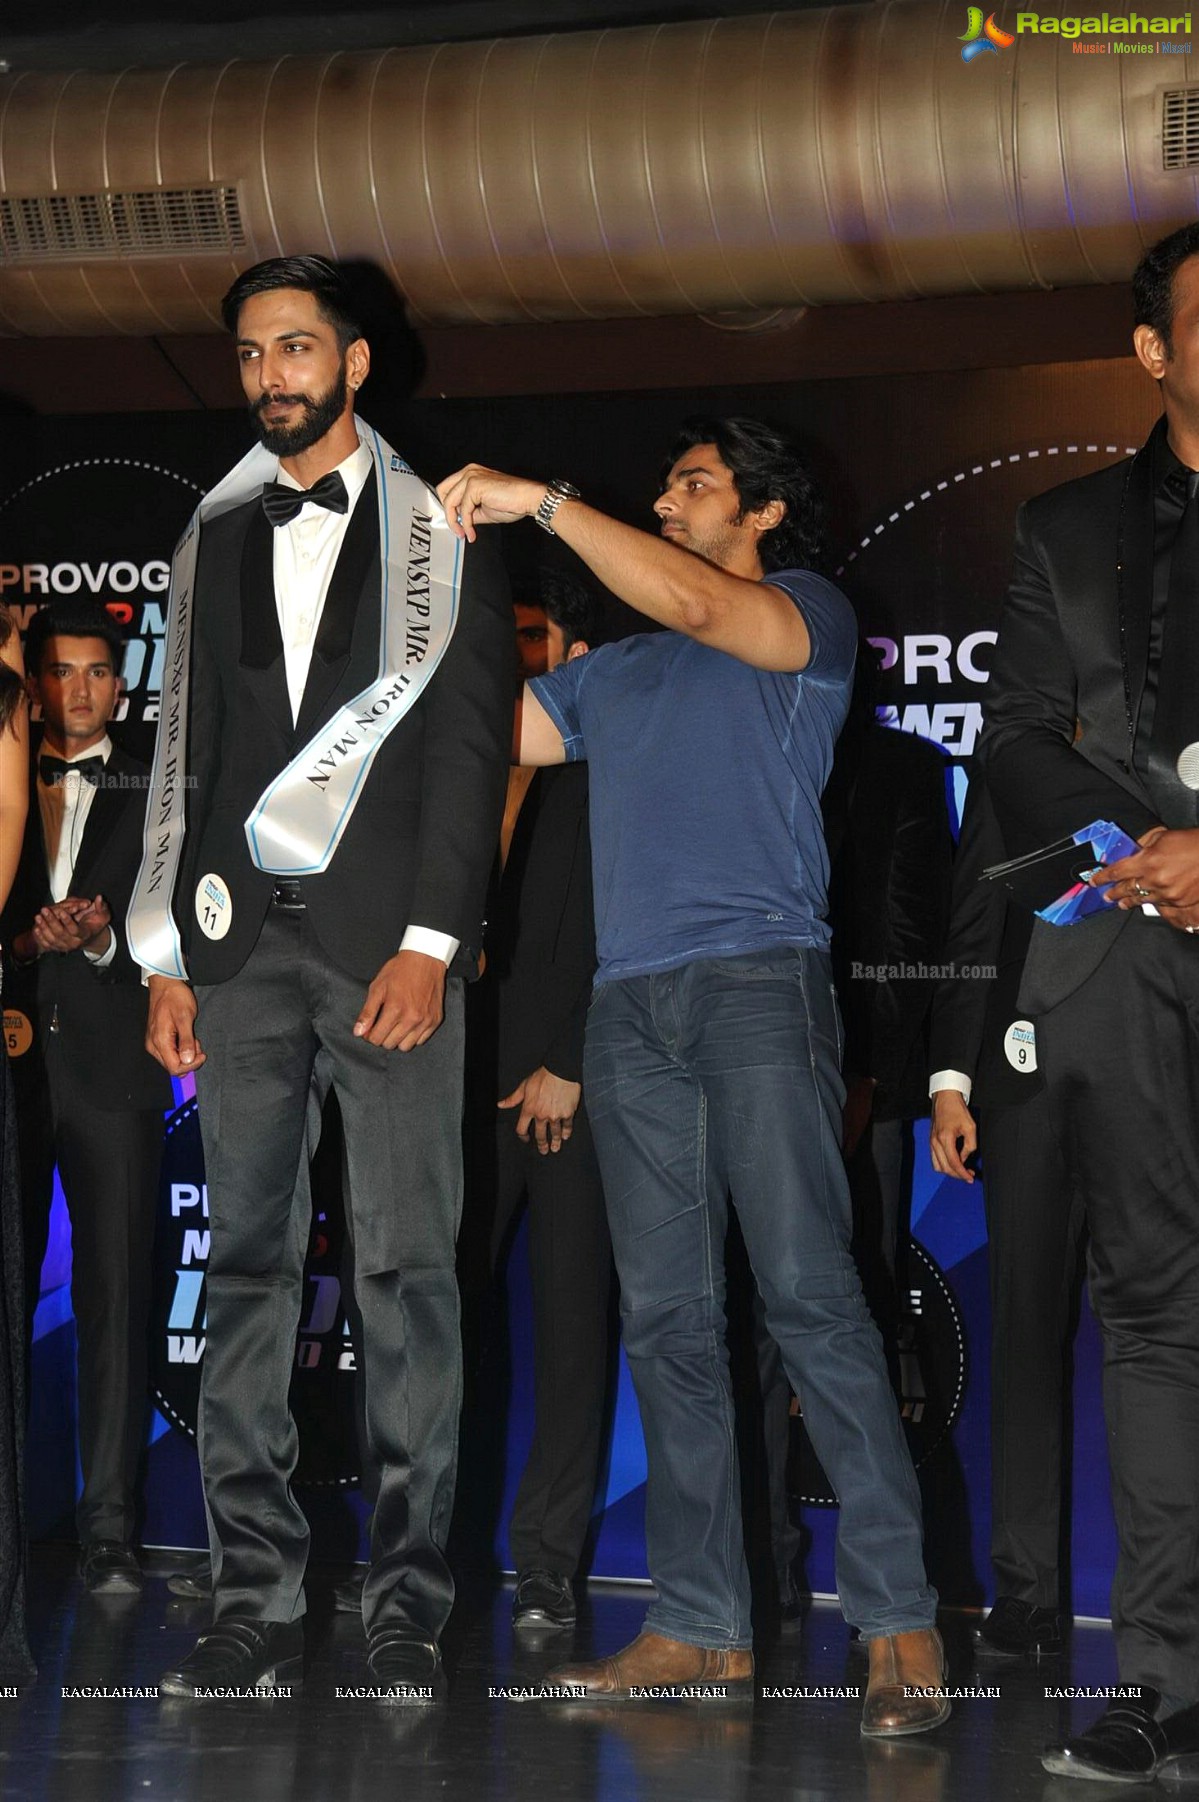 Mr. India 2014 World Grand Finale, Mumbai